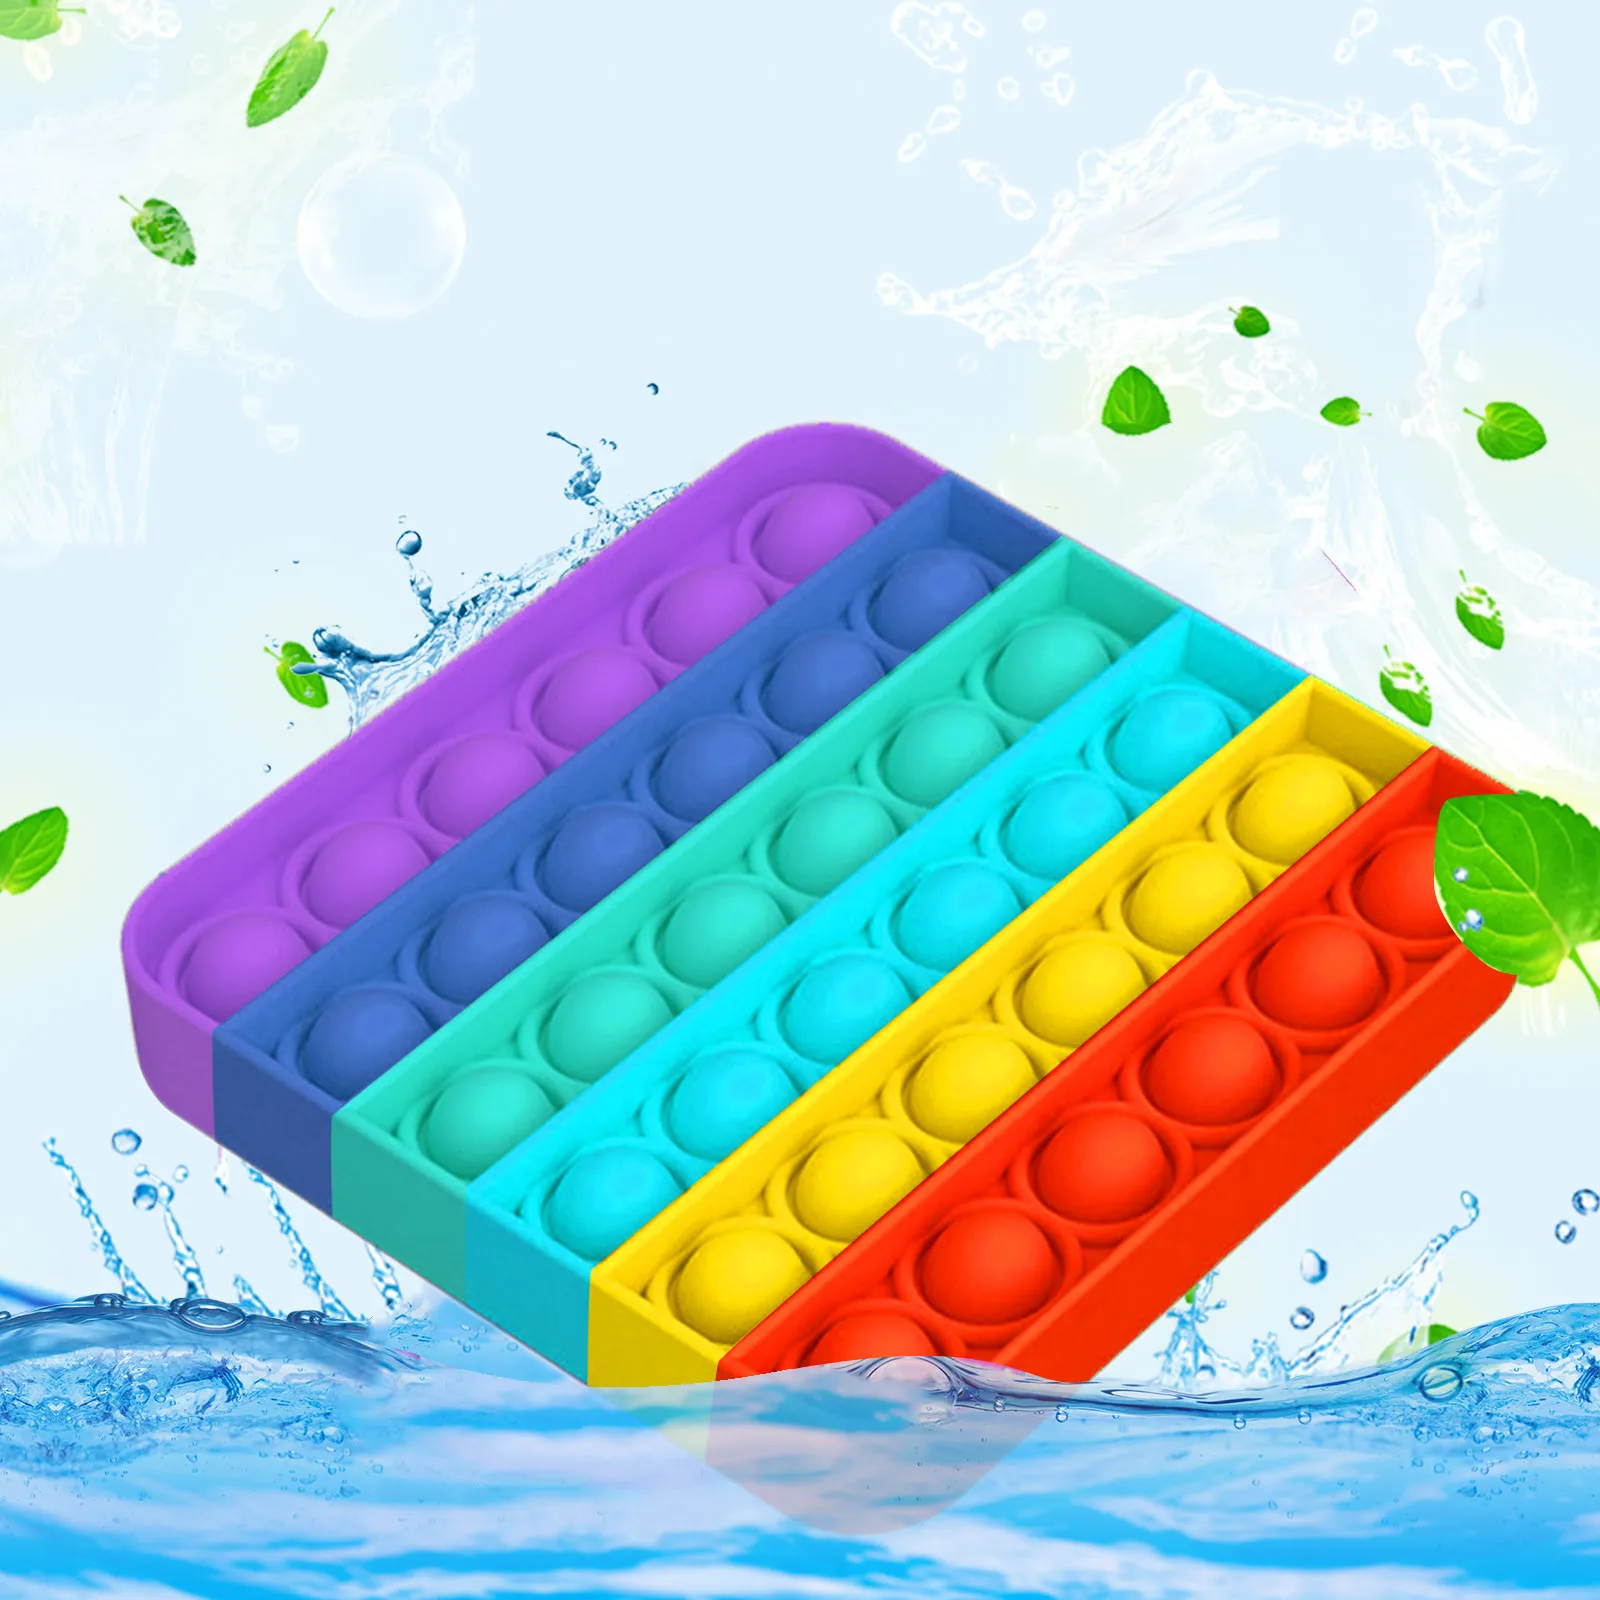 Fitget-Toys Sensory-Toy Autism Fidget Needs-Stress Pop-It-Game Push Bubble Reliever Popoit